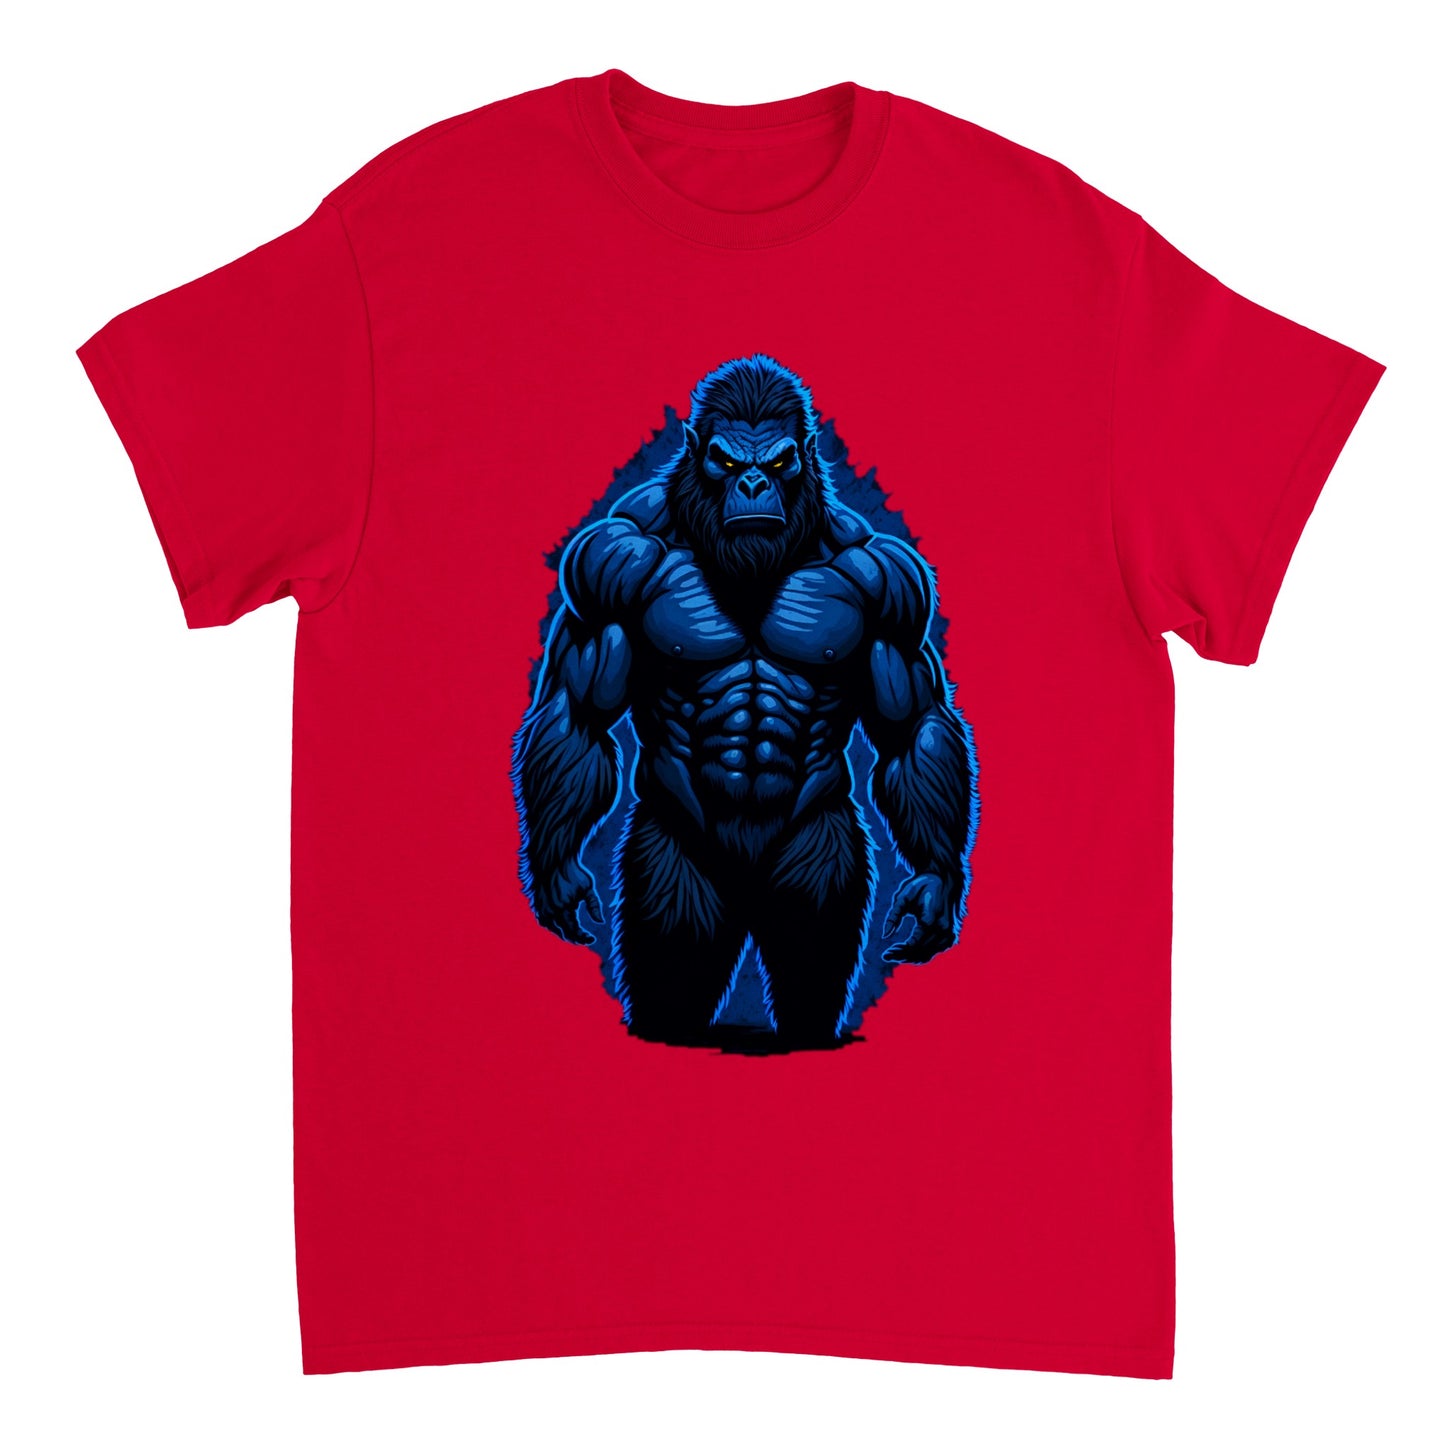 3D Bigfoot Art - Heavyweight Unisex Crewneck T-shirt 22